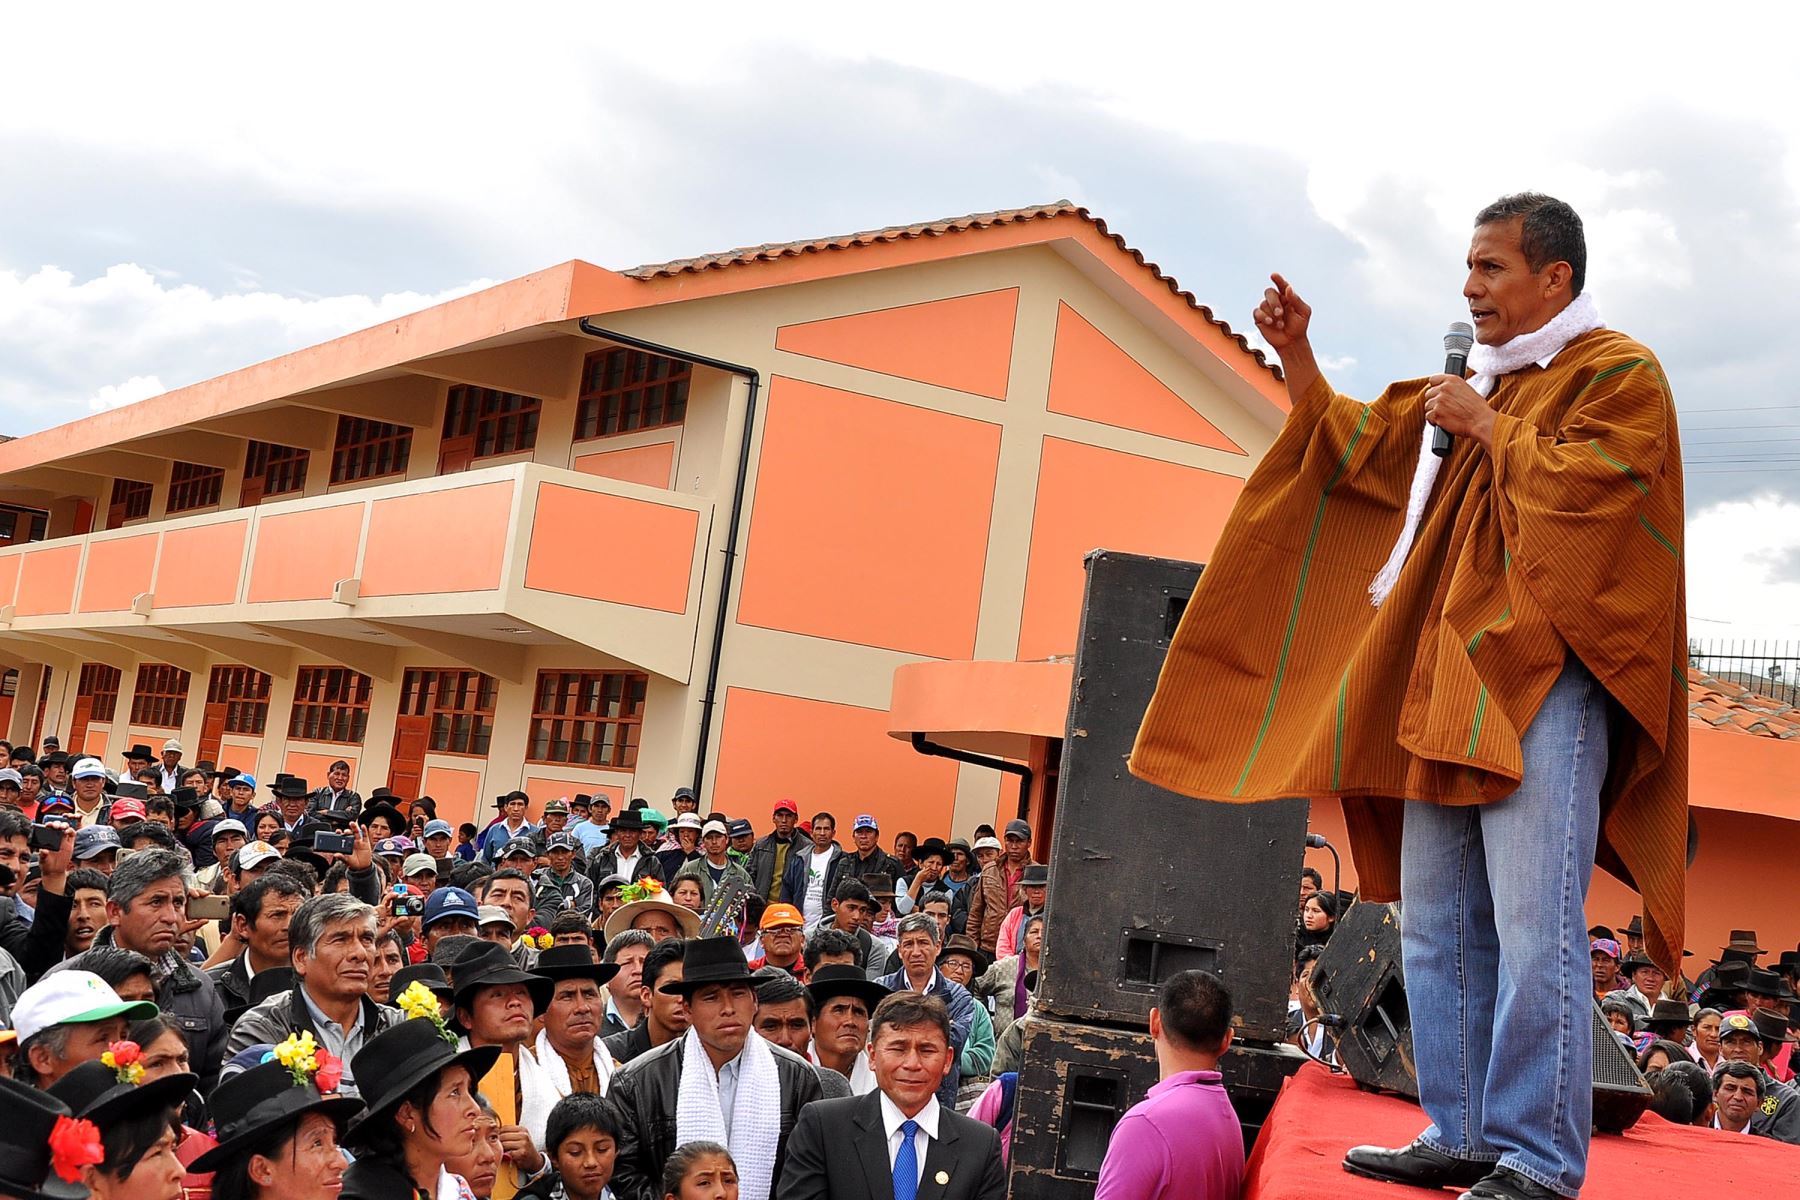 Jefe de estado Ollanta Humala inaugura obras de mejoramiento en colegio de Ayacucho.Foto: ANDINA/Prensa Presidencia